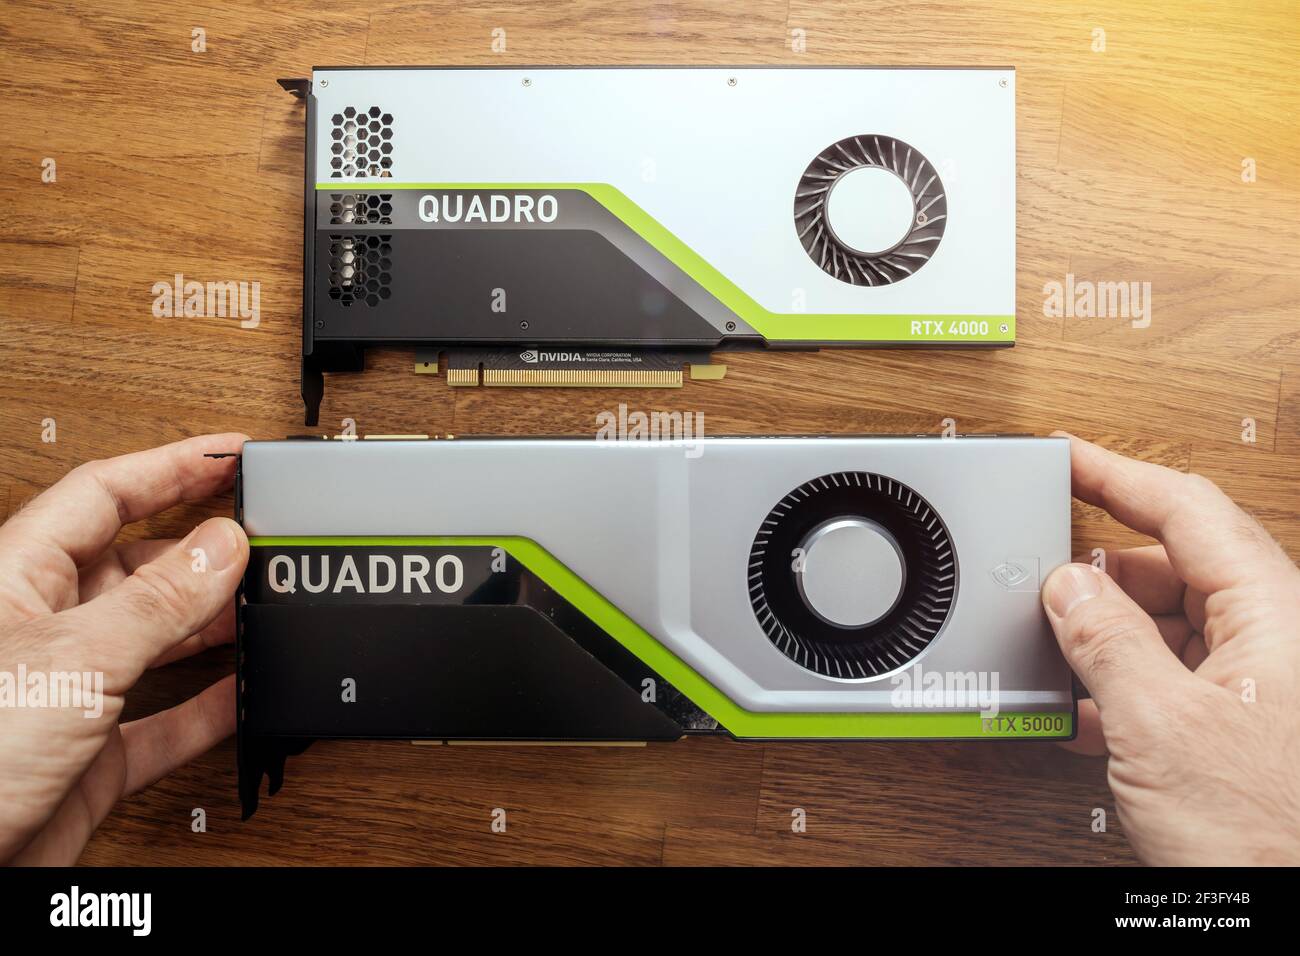 Ingeniero jefe manos pov Holding mirando la comparación de dos nuevas GPU  Nvidia Quadro RTX 4000 RTX 5000 basado en la microarquitectura Turing, y  características Fotografía de stock - Alamy